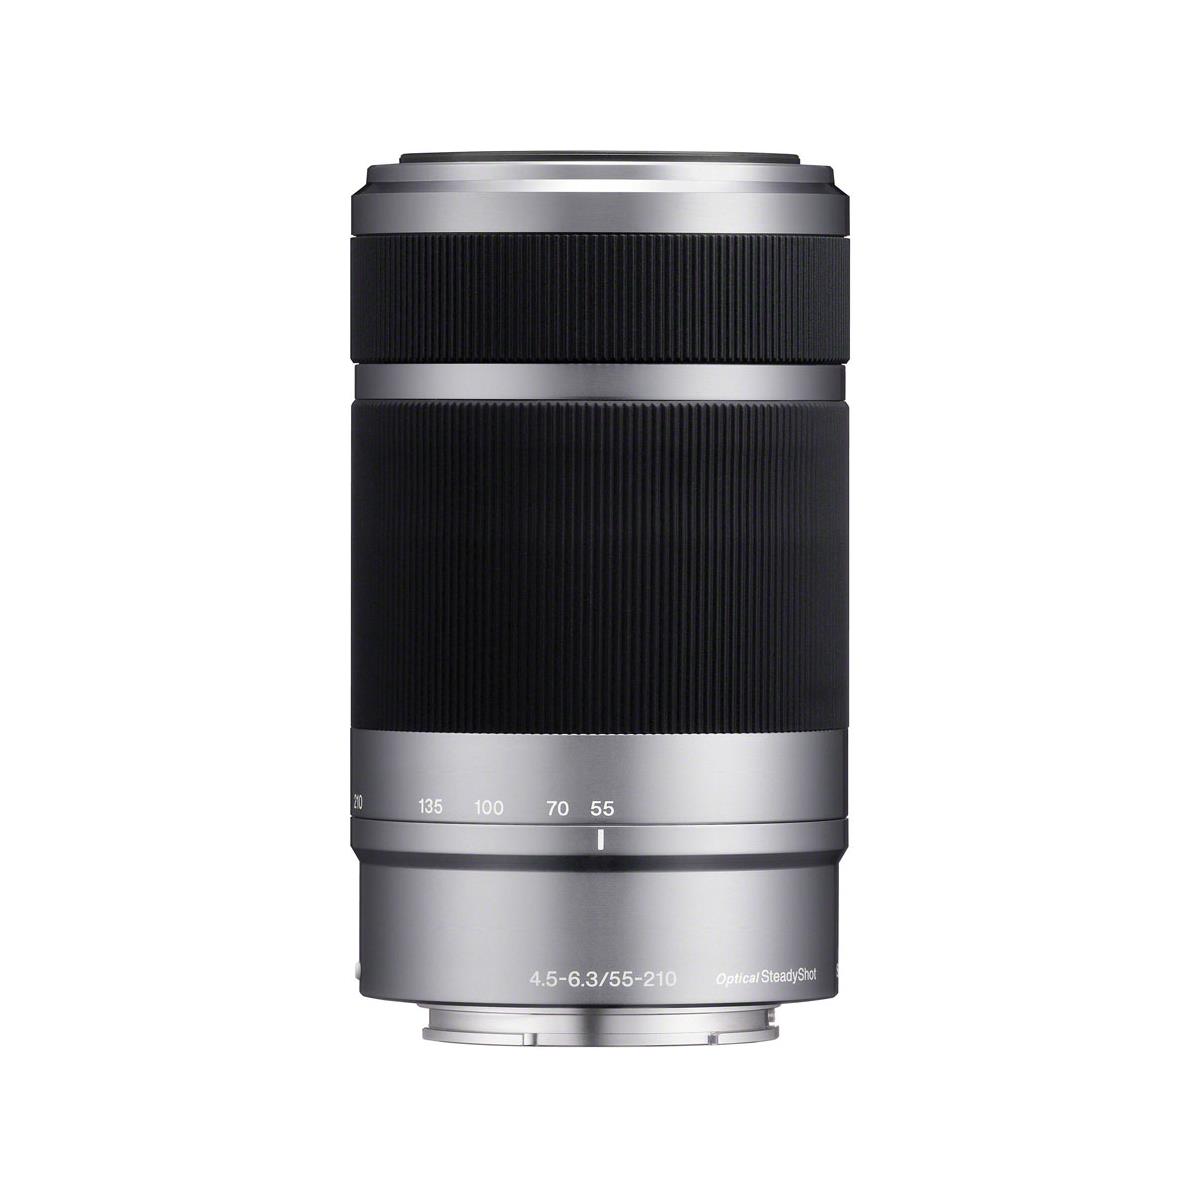 Image of Sony E 55-210mm f/4.5-6.3 OSS Lens for Sony E